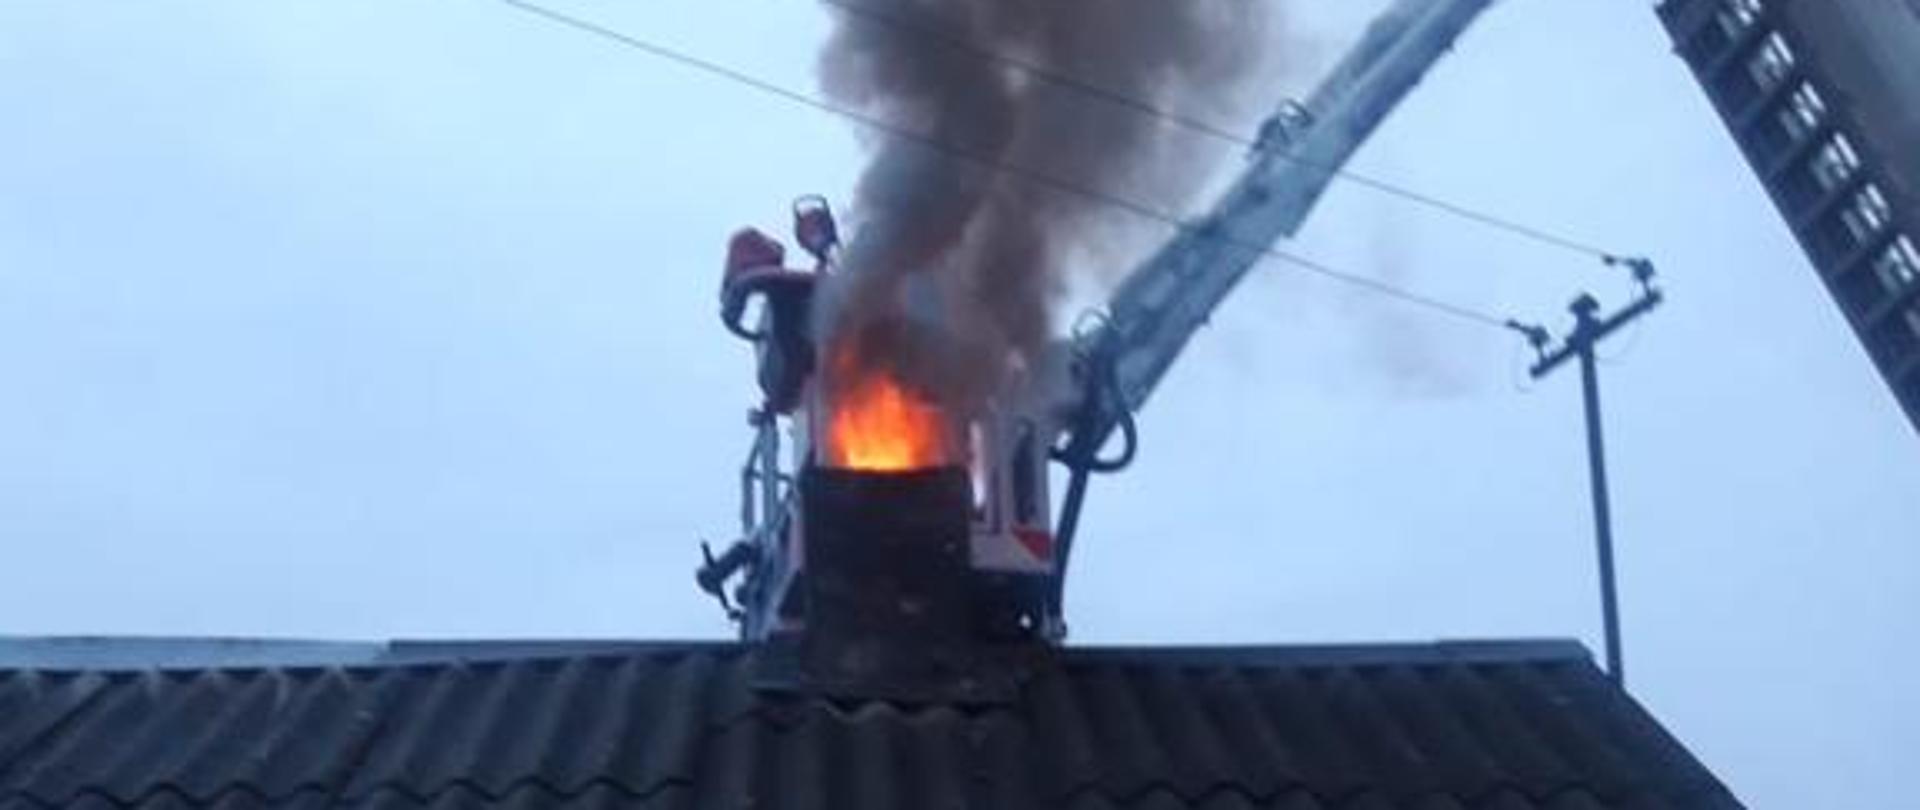 Na zdjęciu widnieje pożar sadzy w kominie.